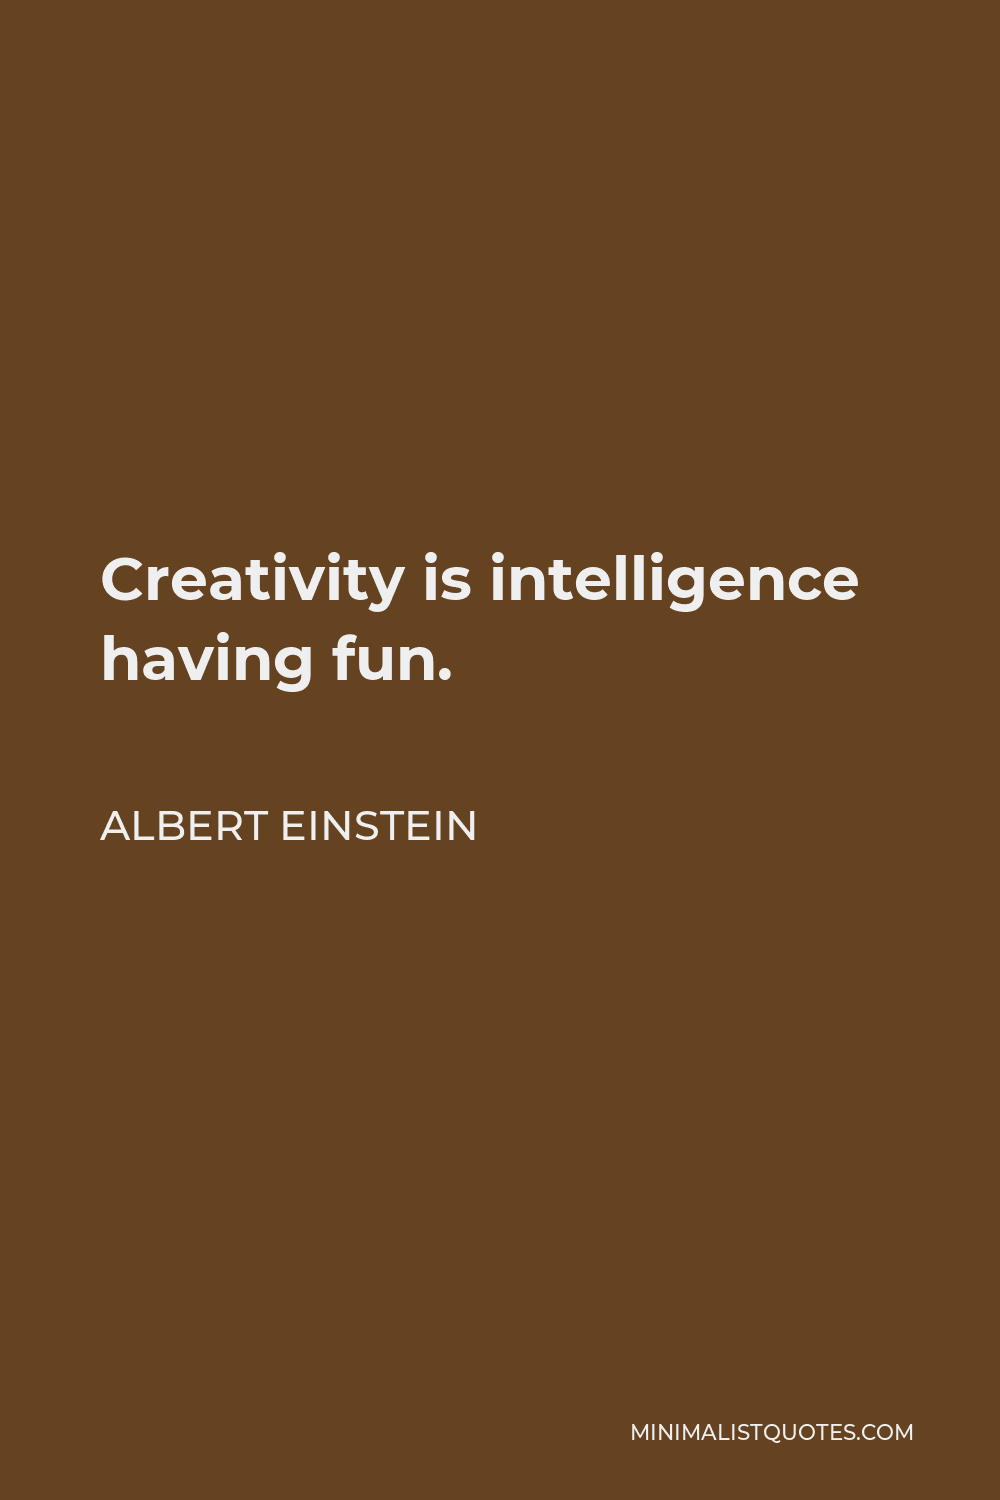 Albert Einstein Quote - Creativity is intelligence having fun.